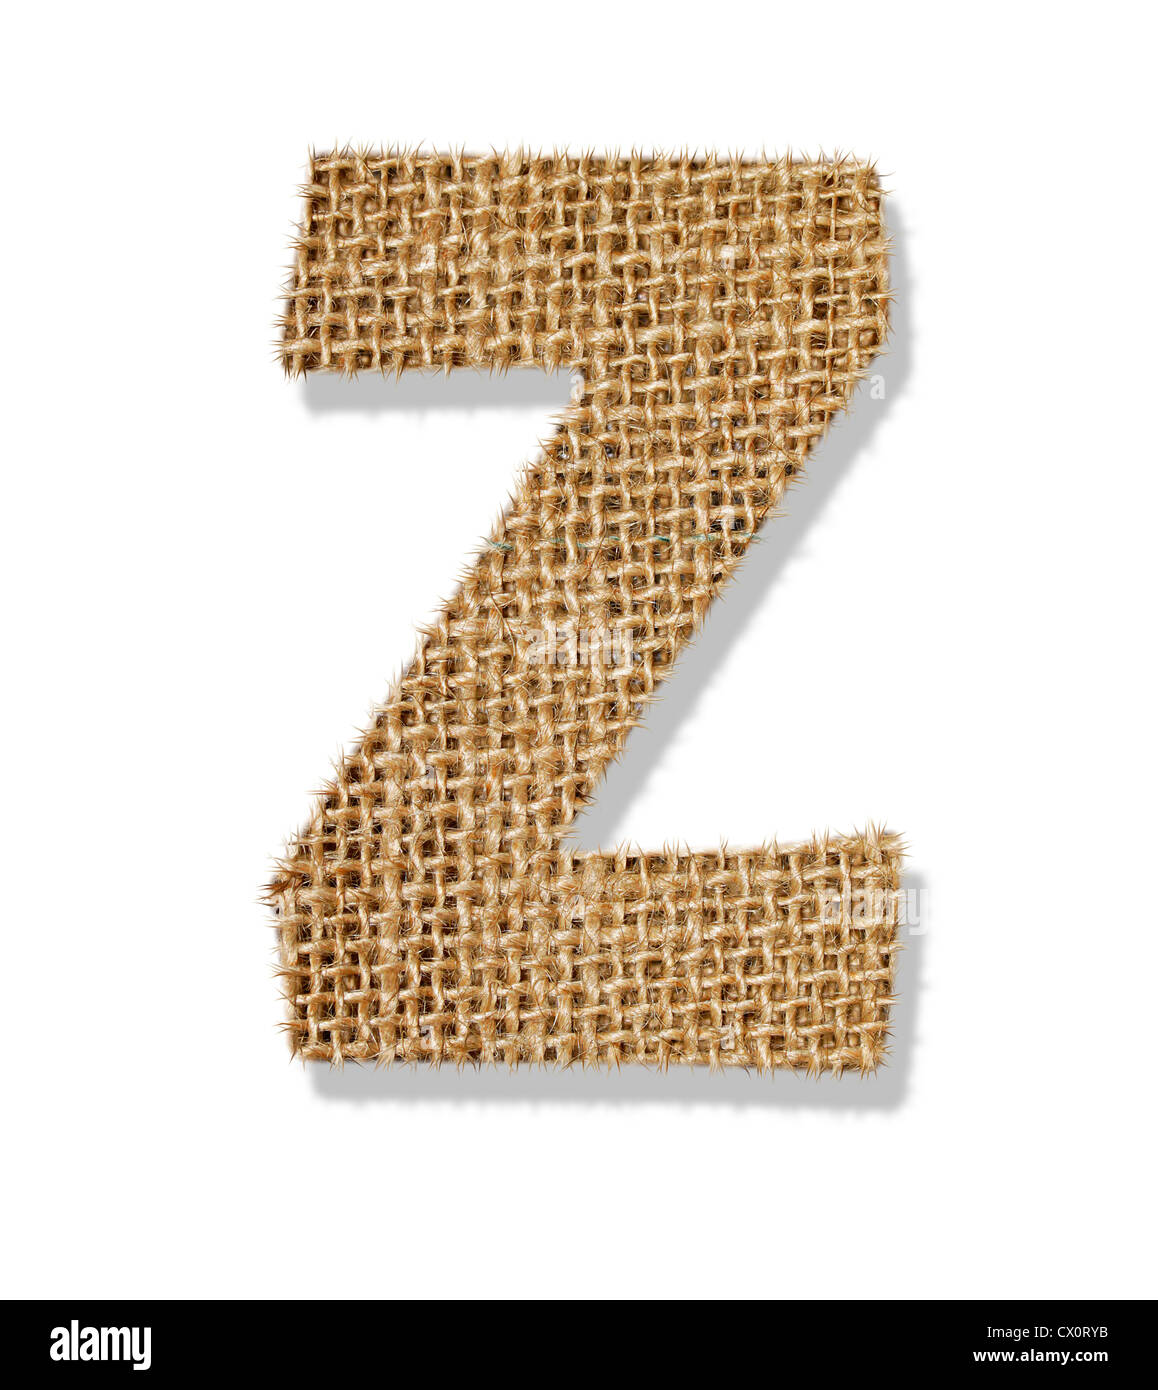 Der Buchstabe "Z" besteht aus grobem Tuch. Stockfoto